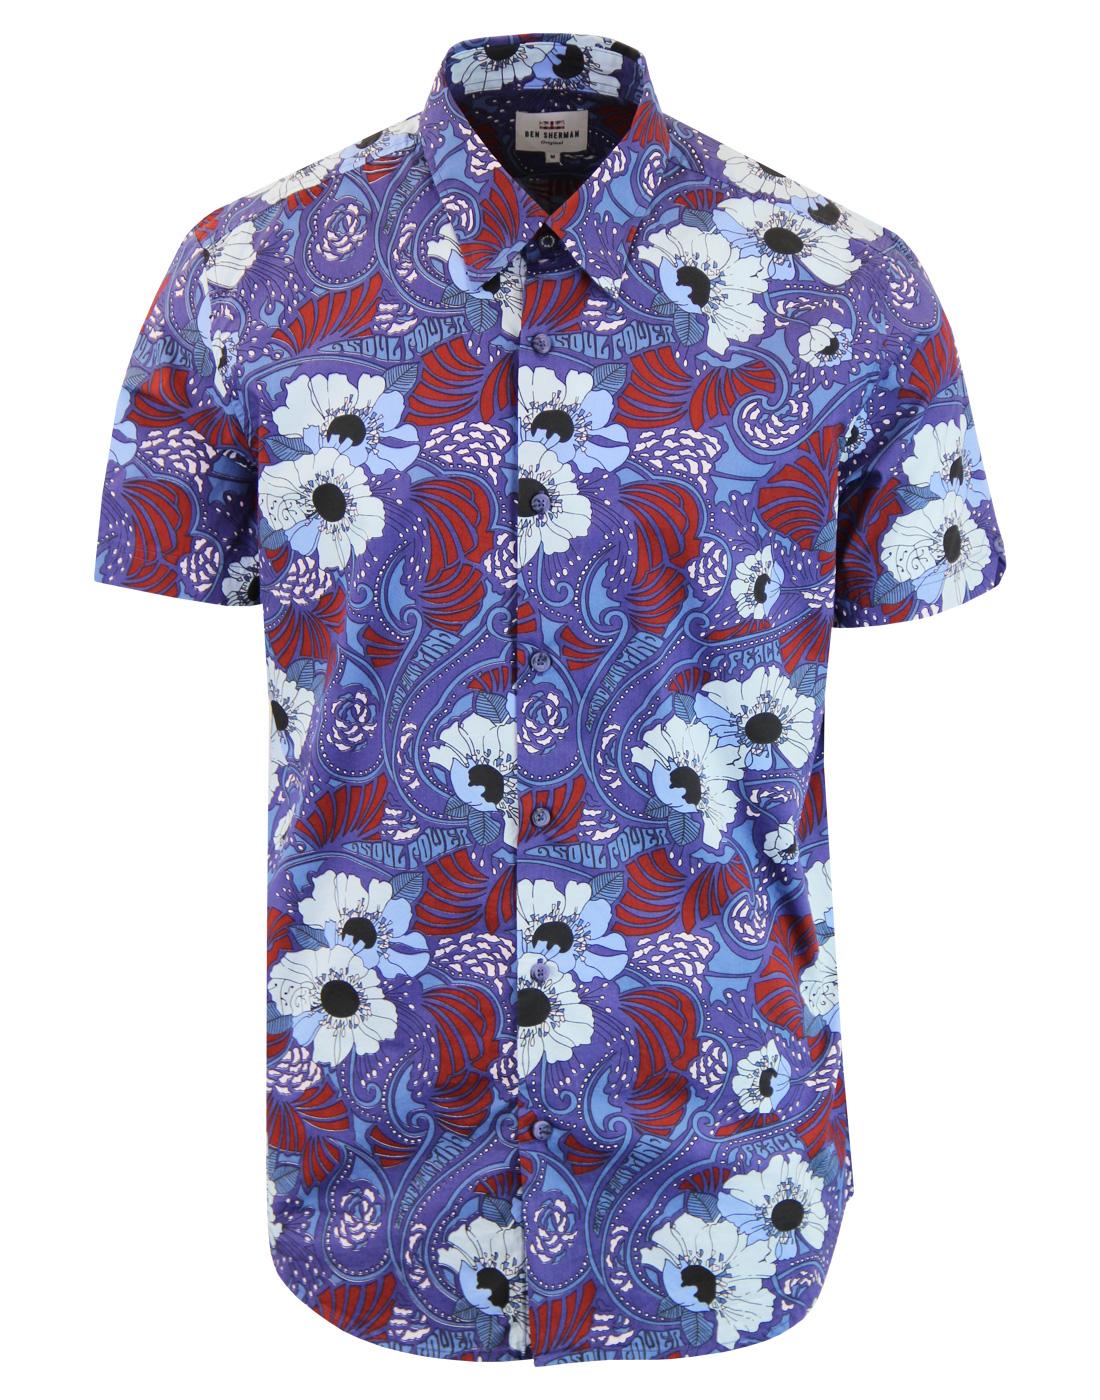 BEN SHERMAN Mens 1960s Mod Soul Power Floral Shirt